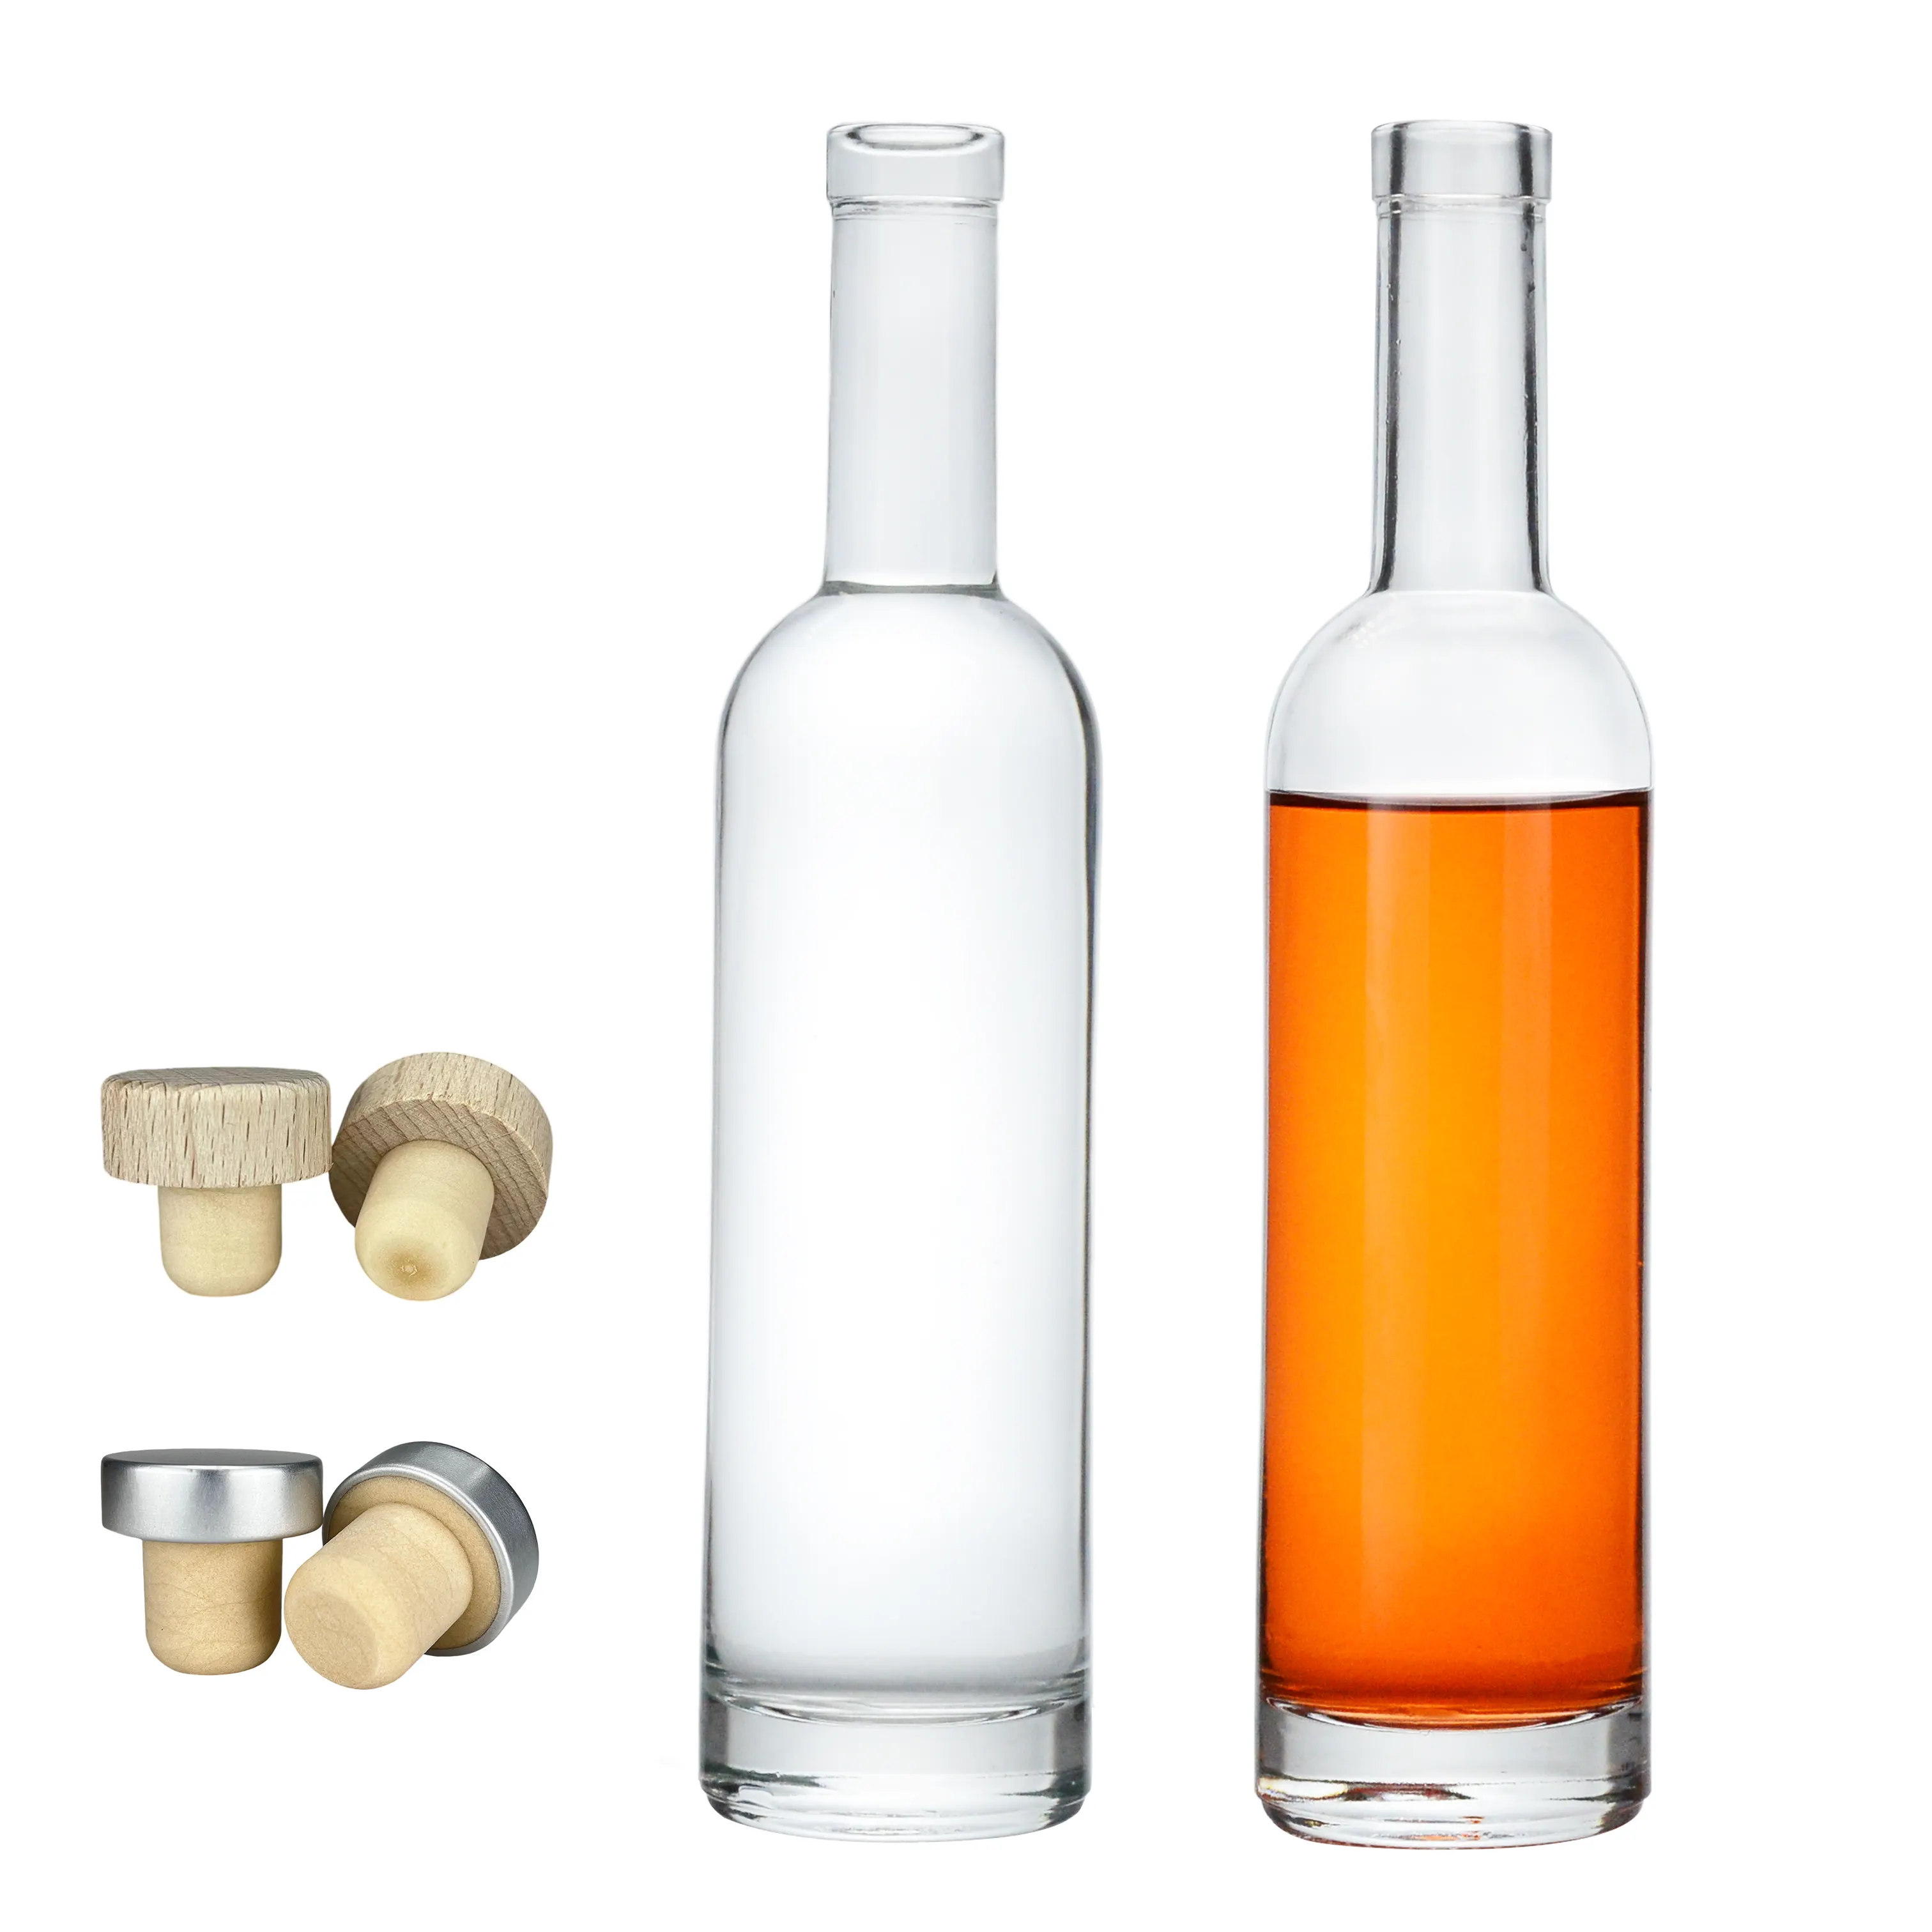 Botol anggur kaca Flint 750ml bulat bening kustom dengan tutup kayu gabus untuk wiski Vodka Tequila cairan lainnya dikemas dalam kotak